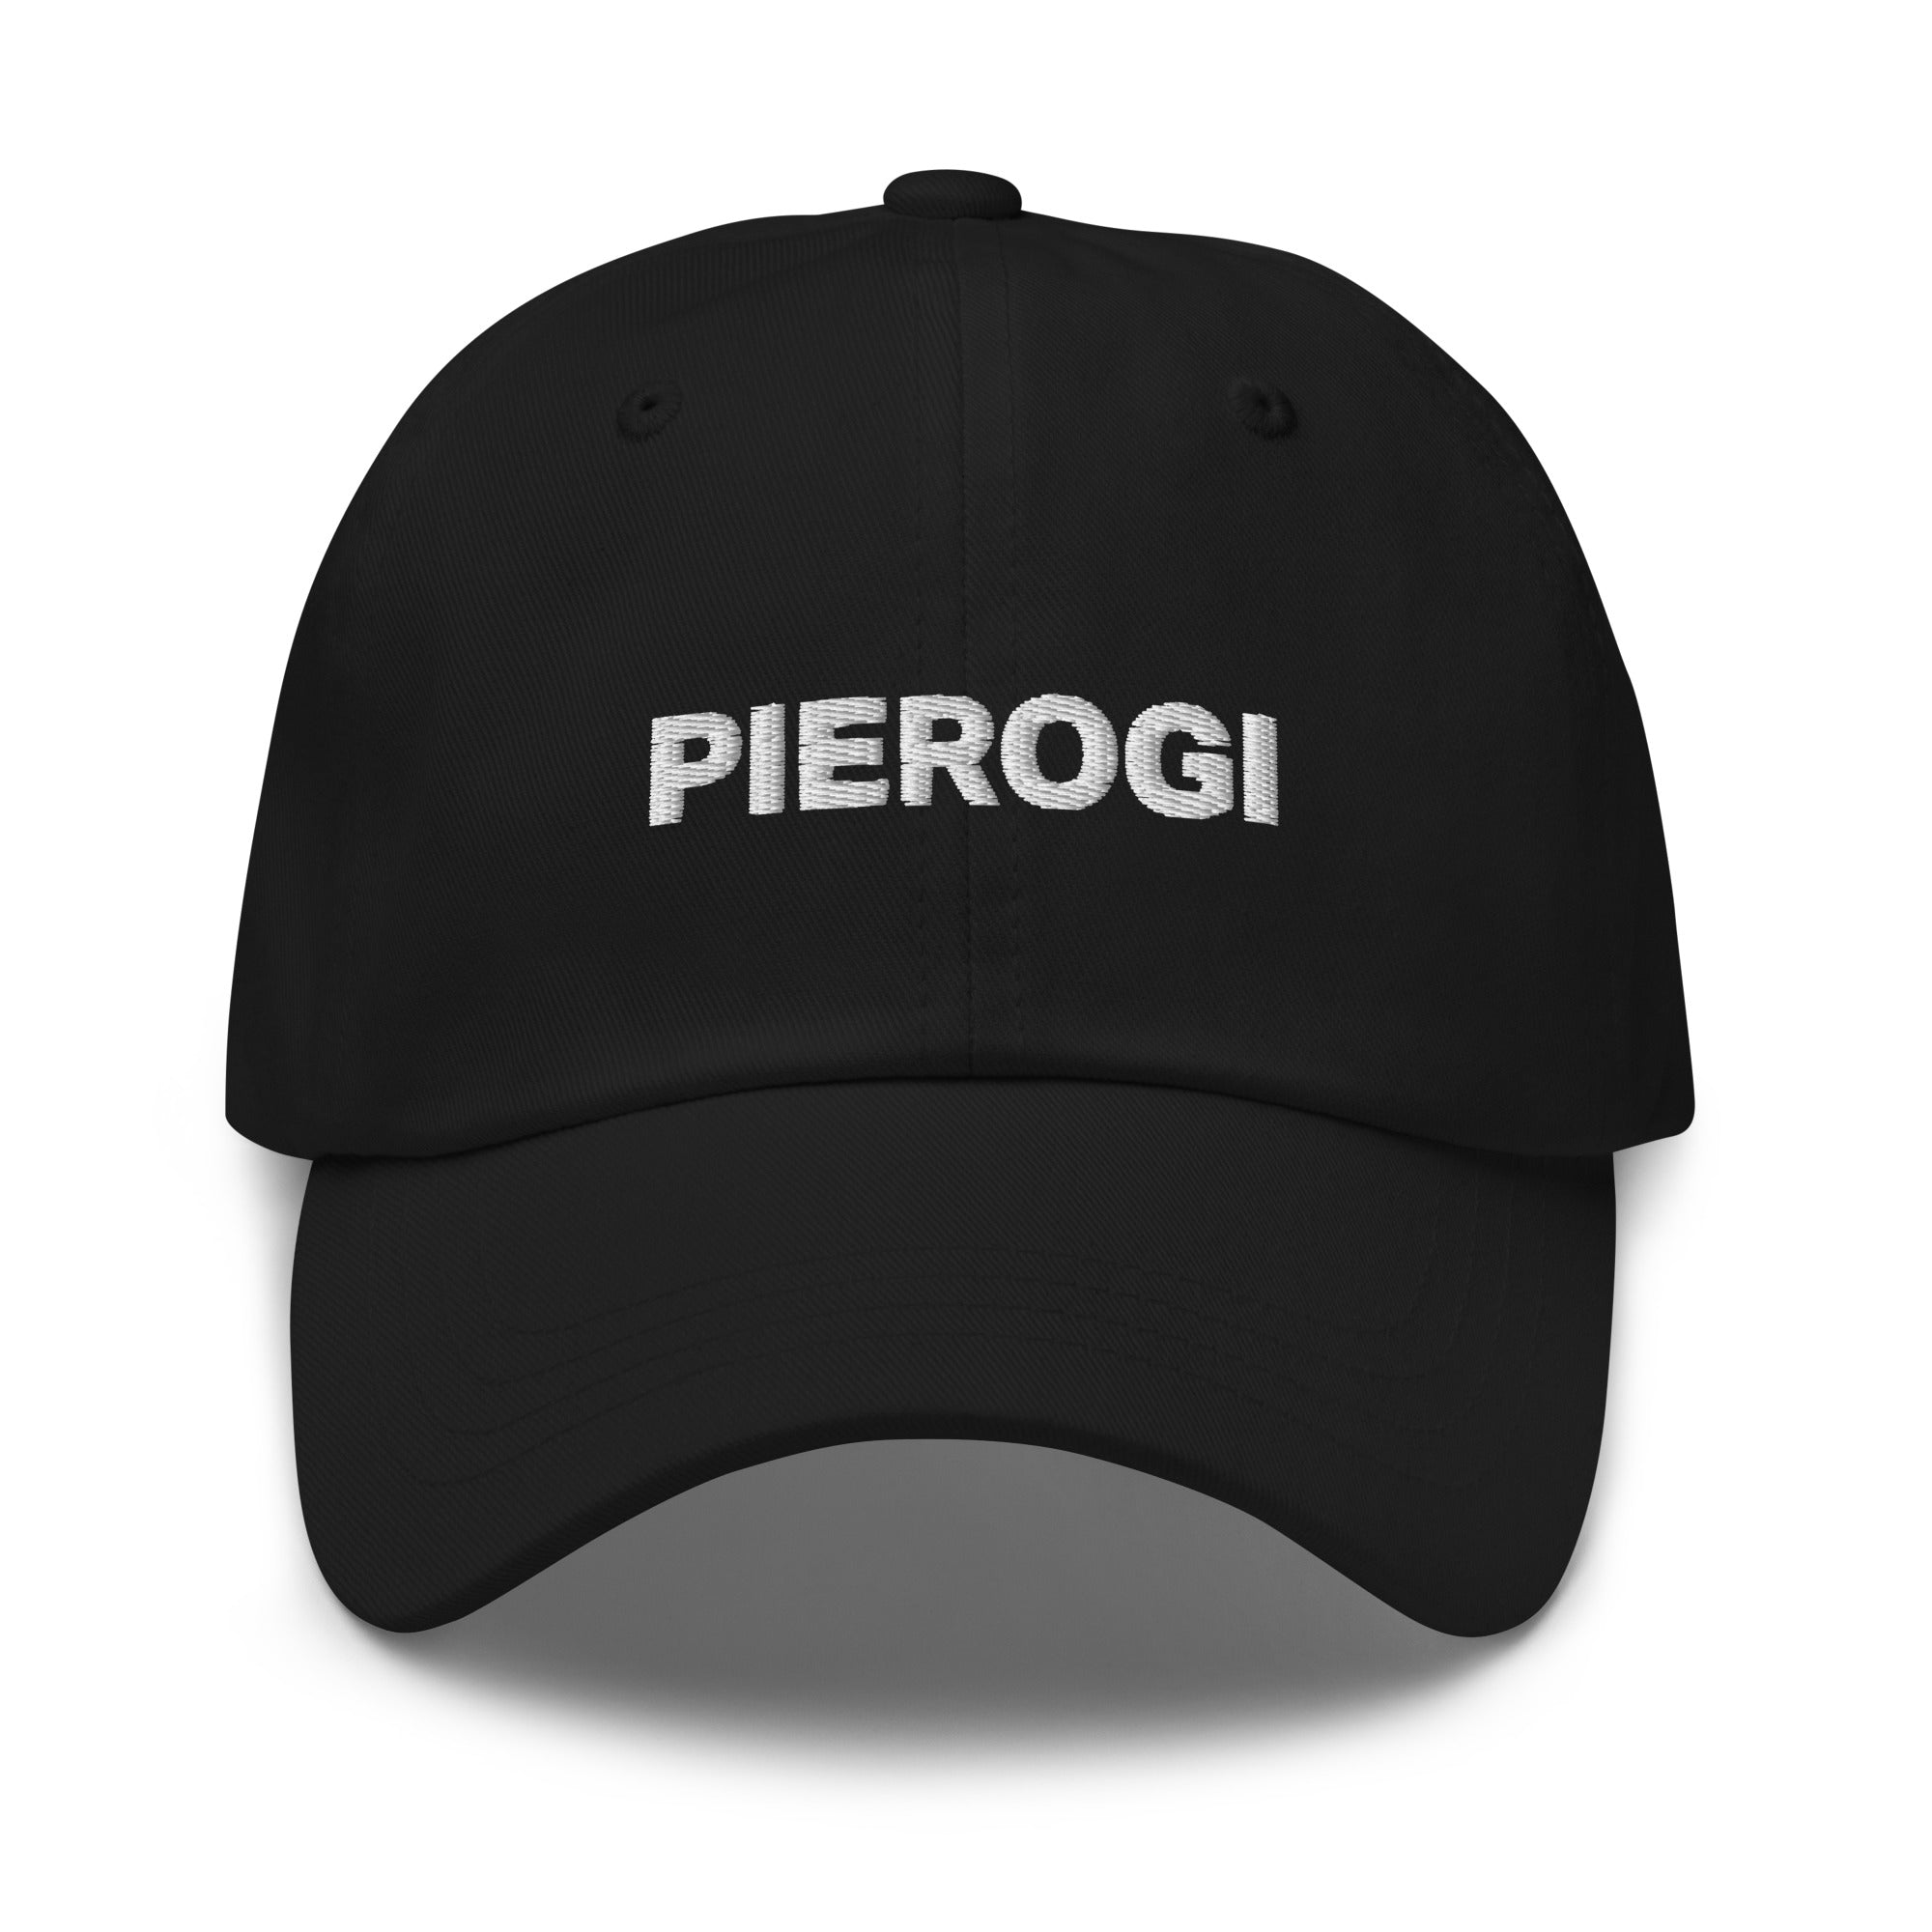 Pierogi hat